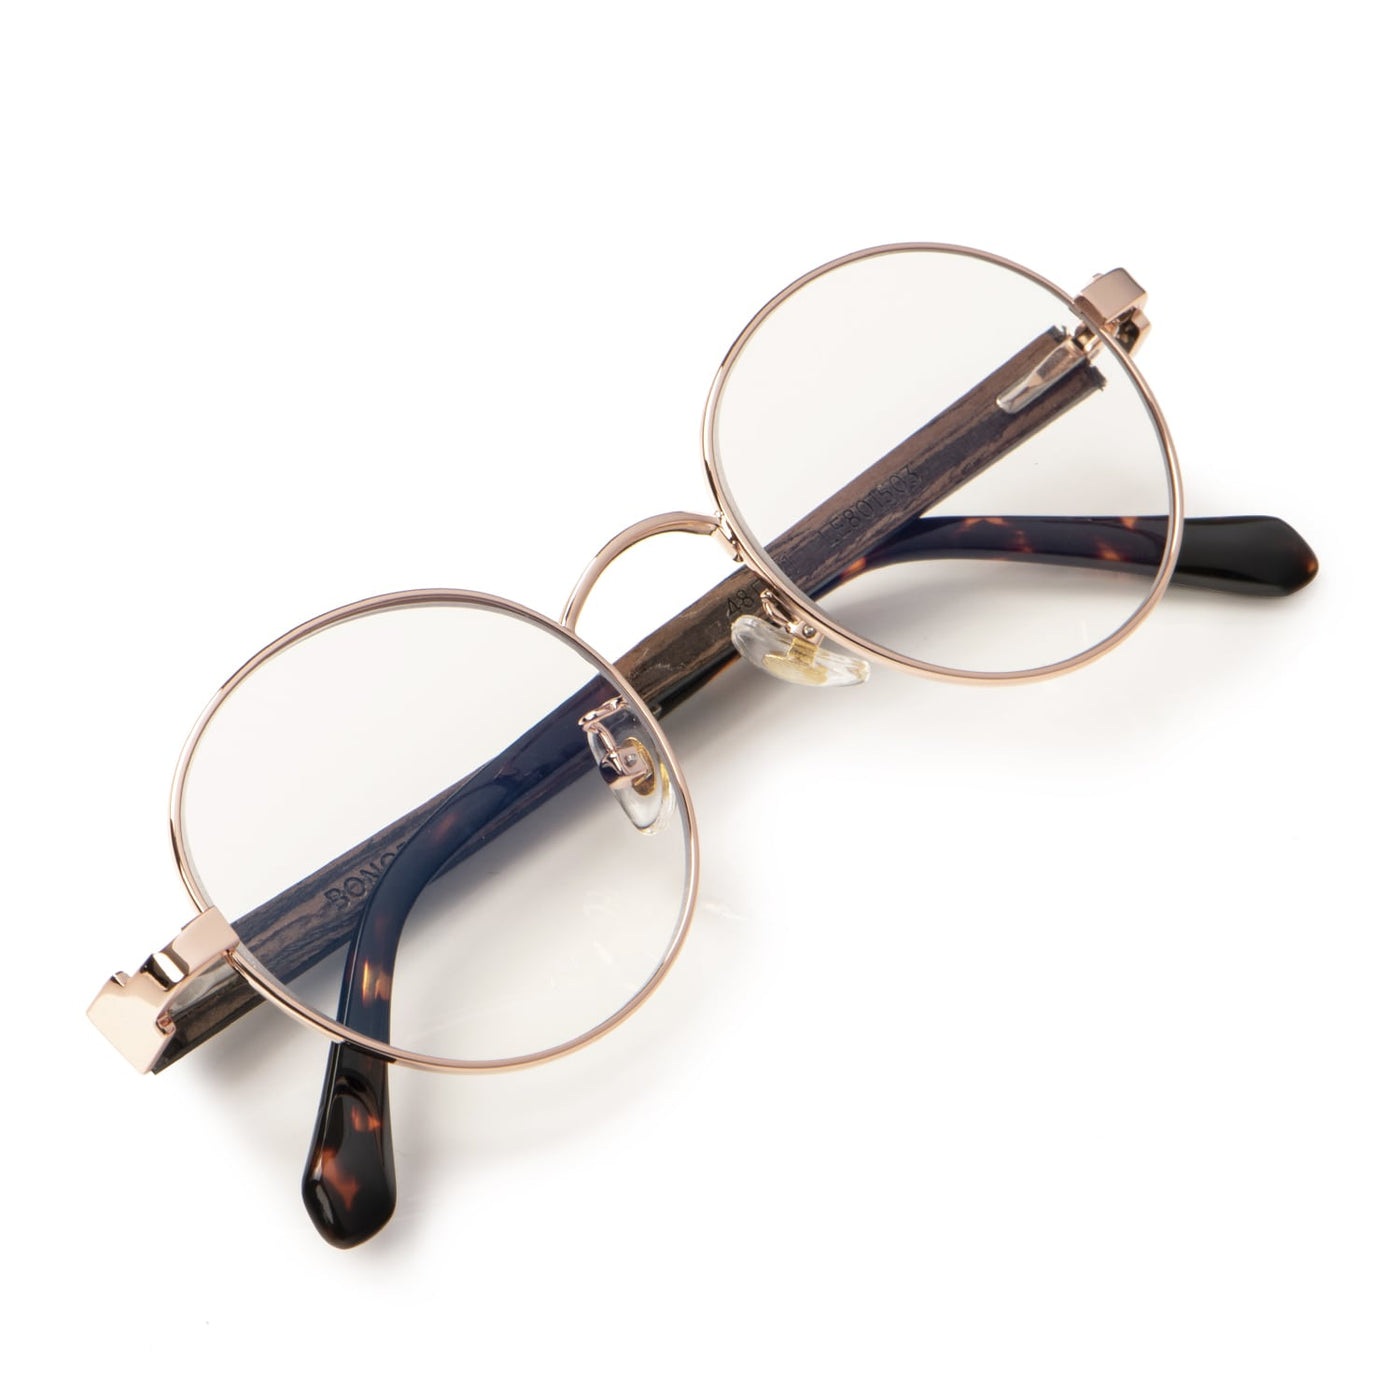 Foto diagonal de lentes ópticos redondos de moda para hombre y mujer. Lentes con receta oftalmológica.